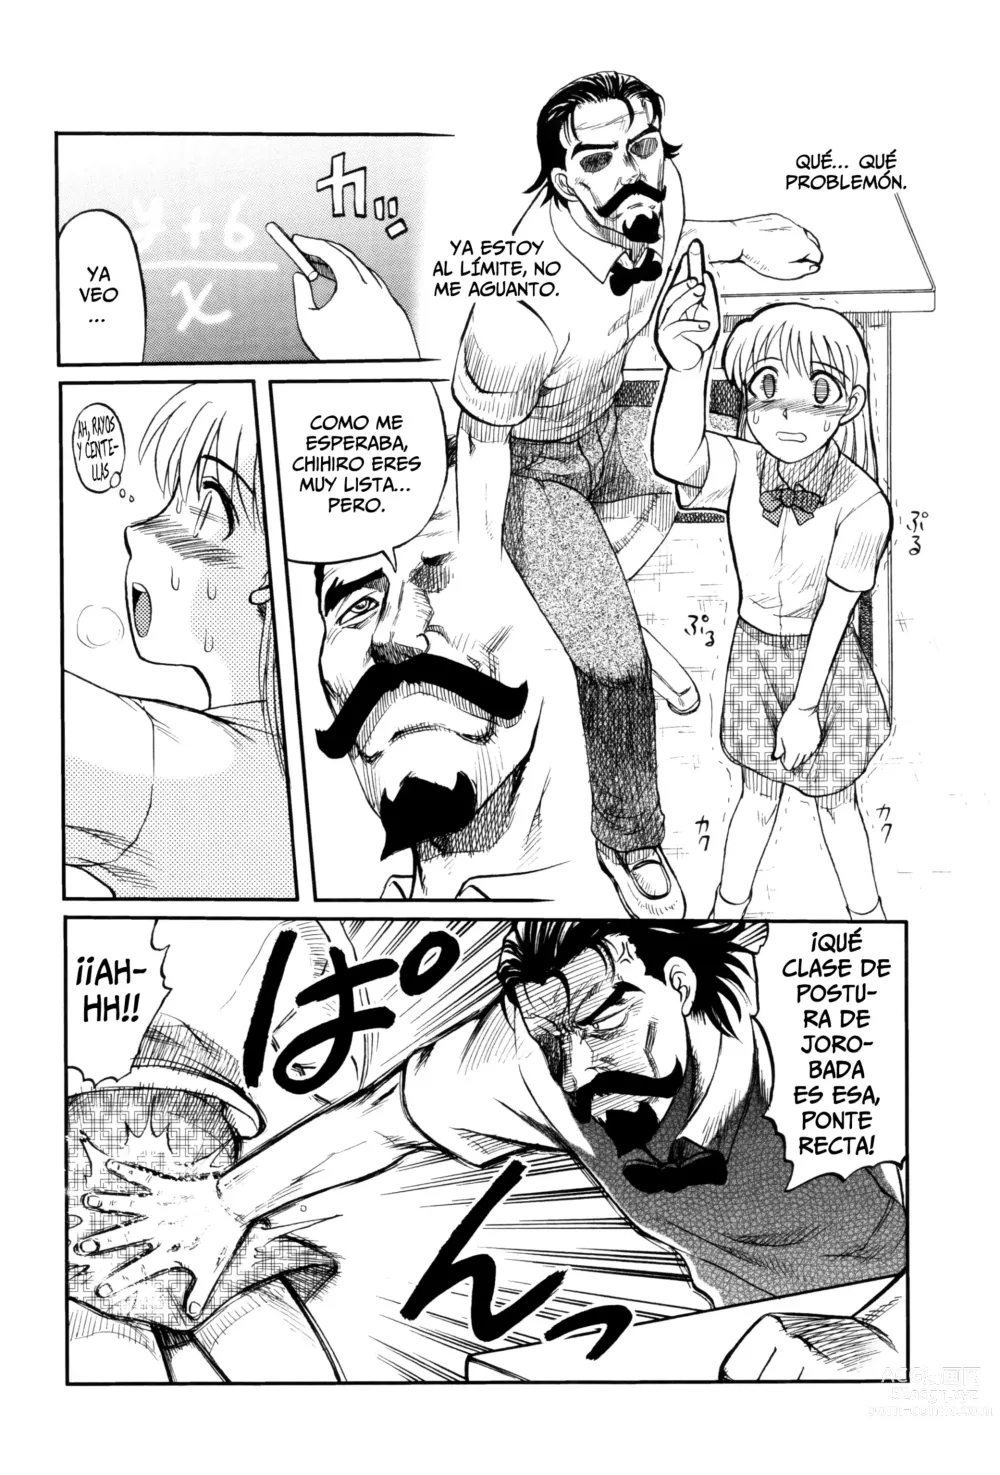 Page 10 of manga El Profesor Salvador Dice Que La Letra Con Sangre Entra